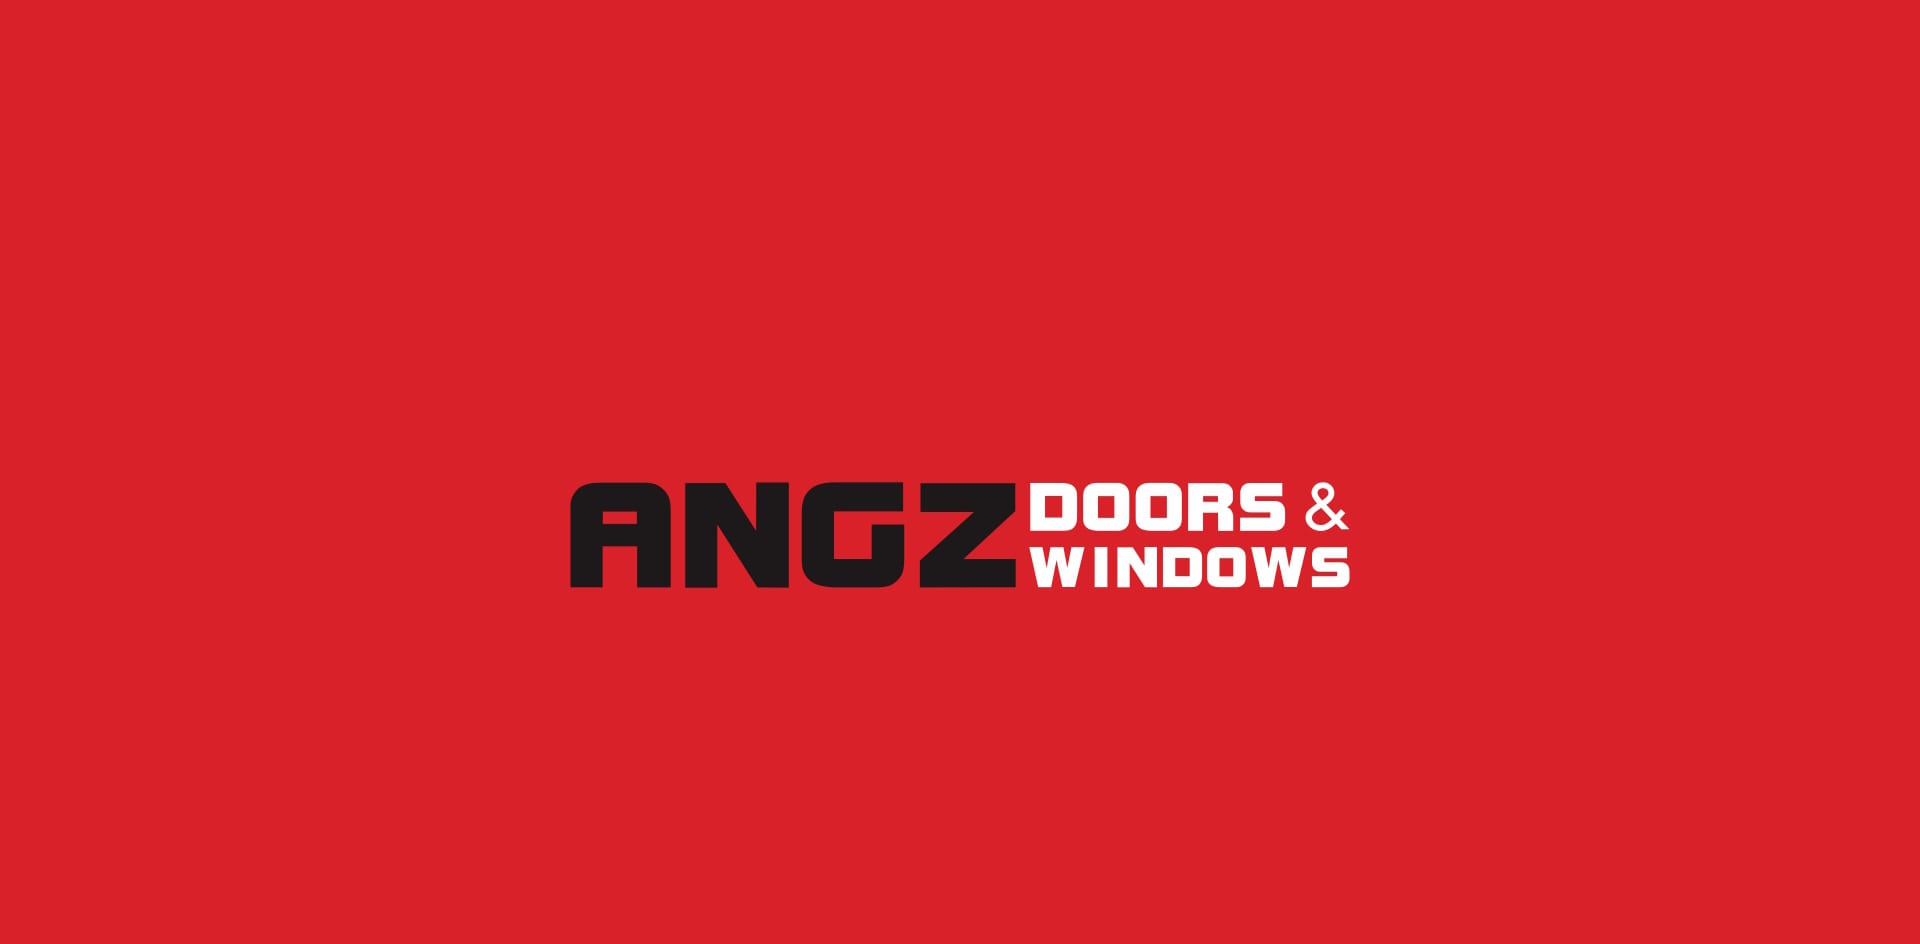 Angz Door & Windows